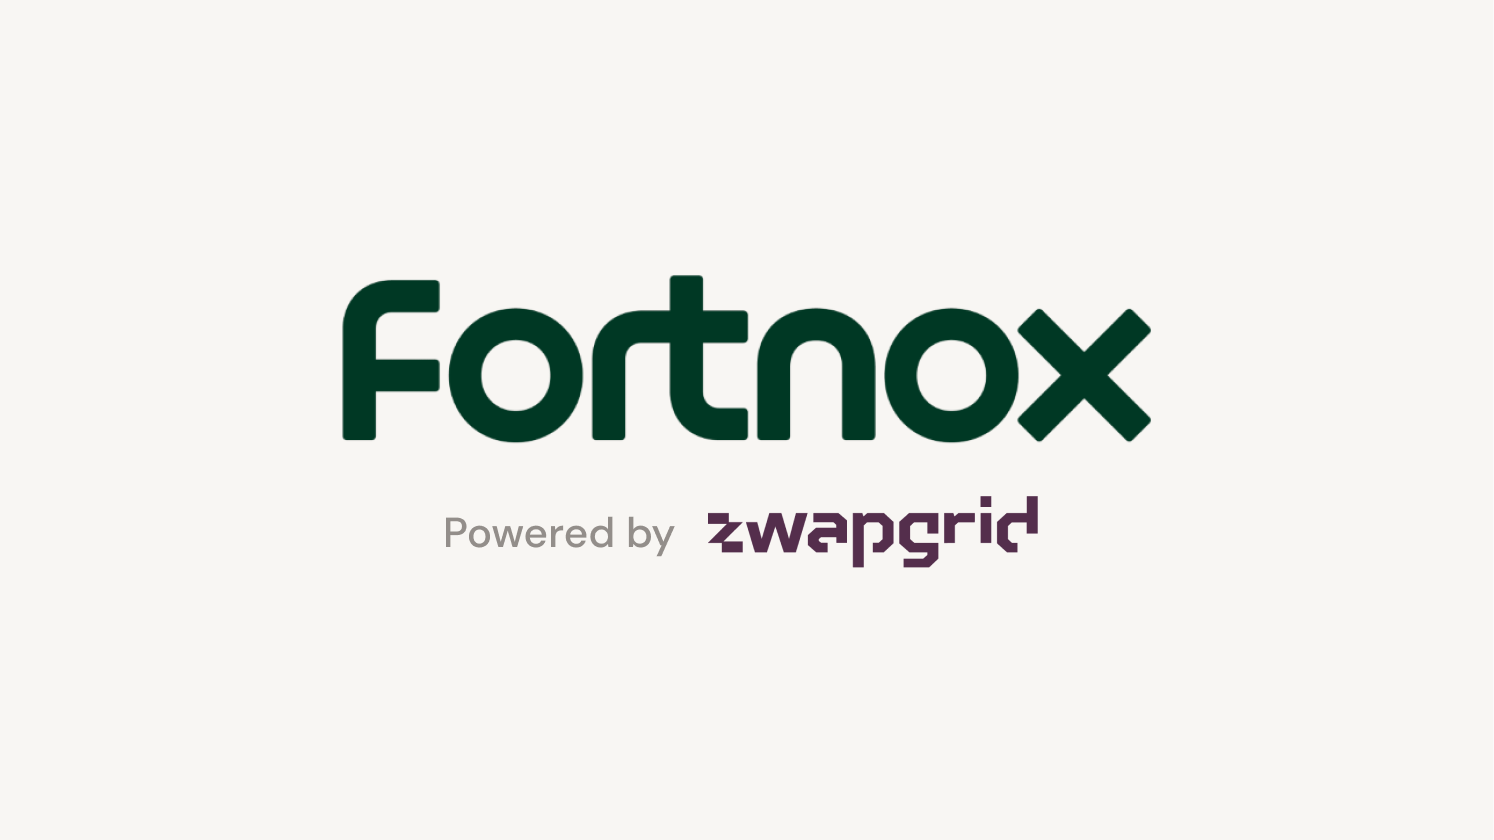 Bild med Fortnox och Zwapgrid